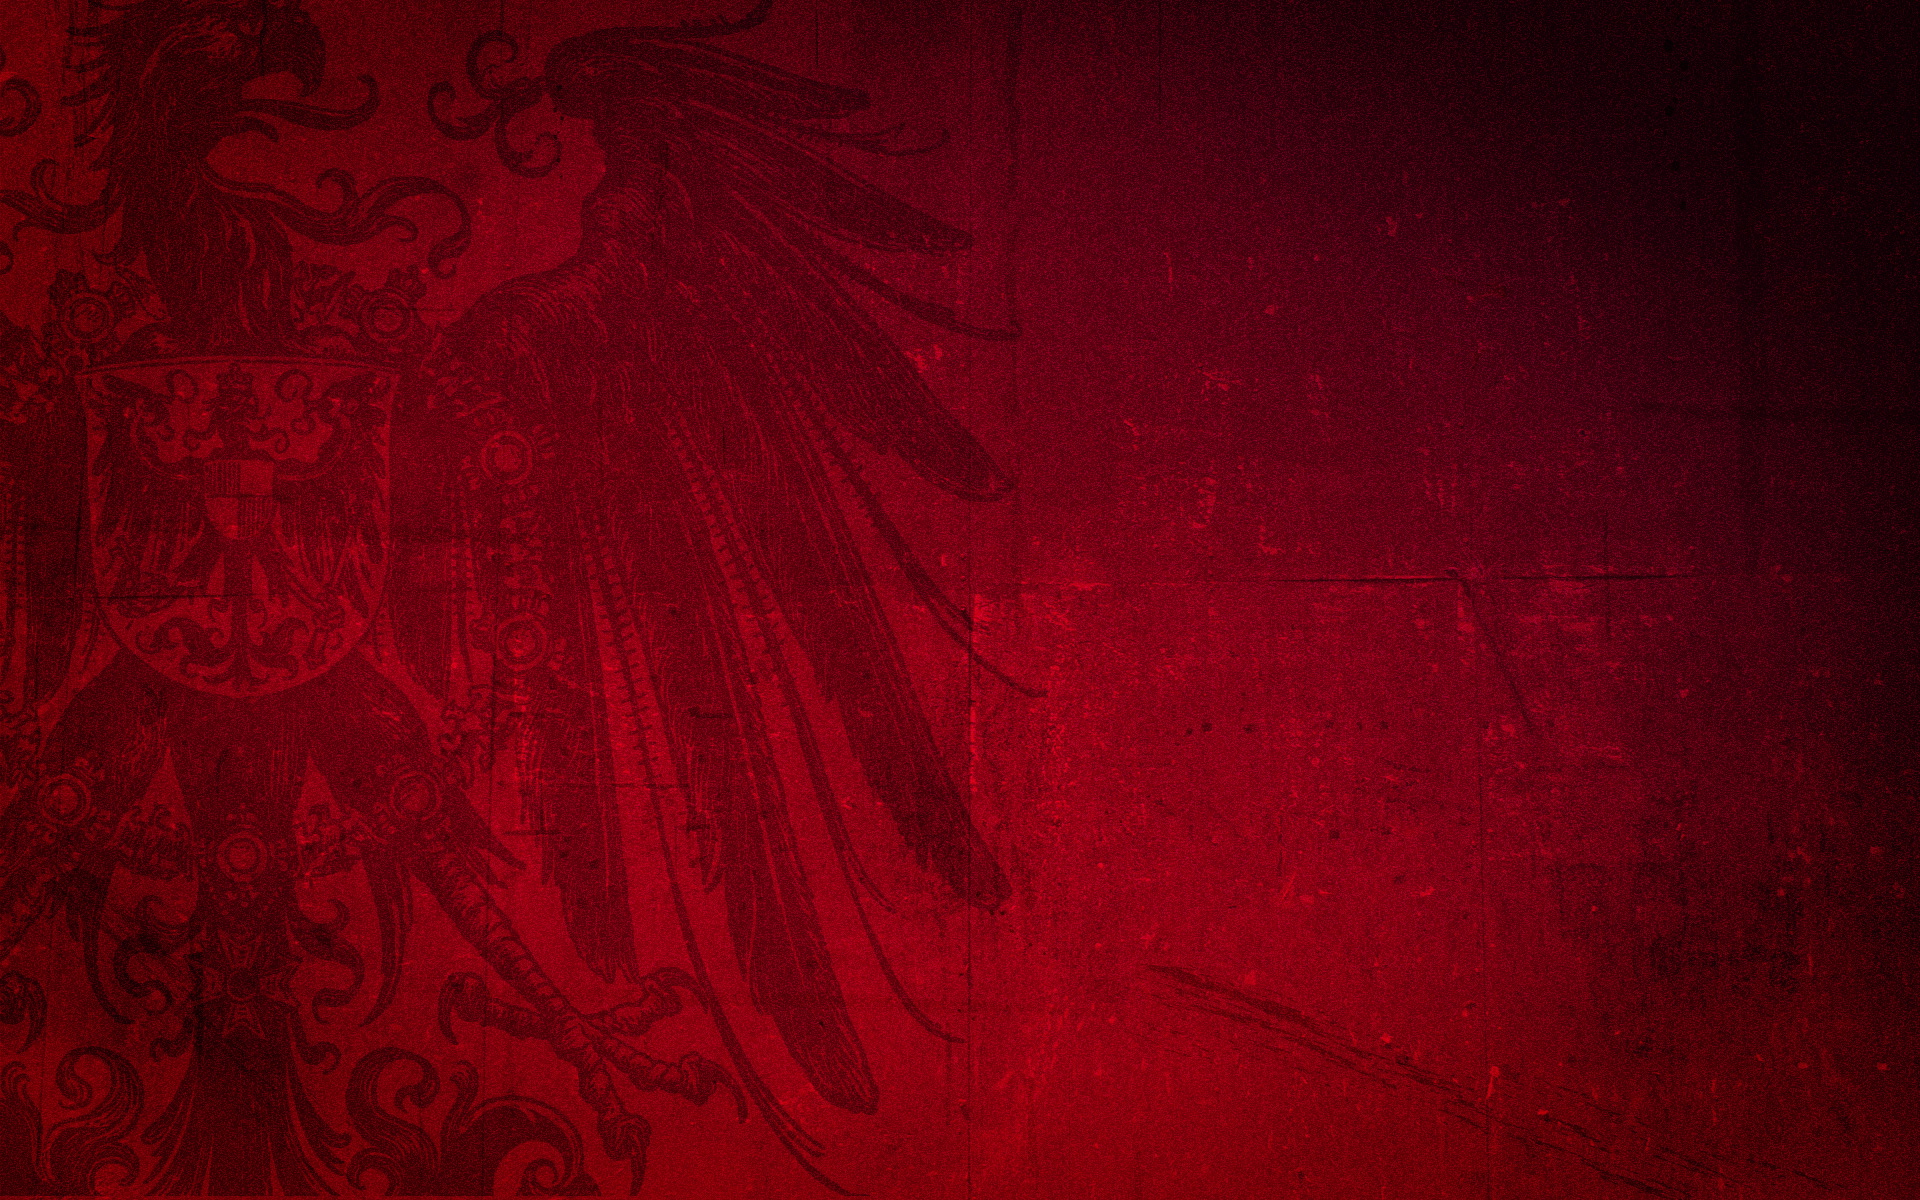 Hình nền điểm nhấn với hoa văn của Đức và kết hợp với giai điệu hoàn hảo của đại bàng đỏ, tạo nên một sự kết hợp tuyệt vời. Nhấp vào ảnh để khám phá.